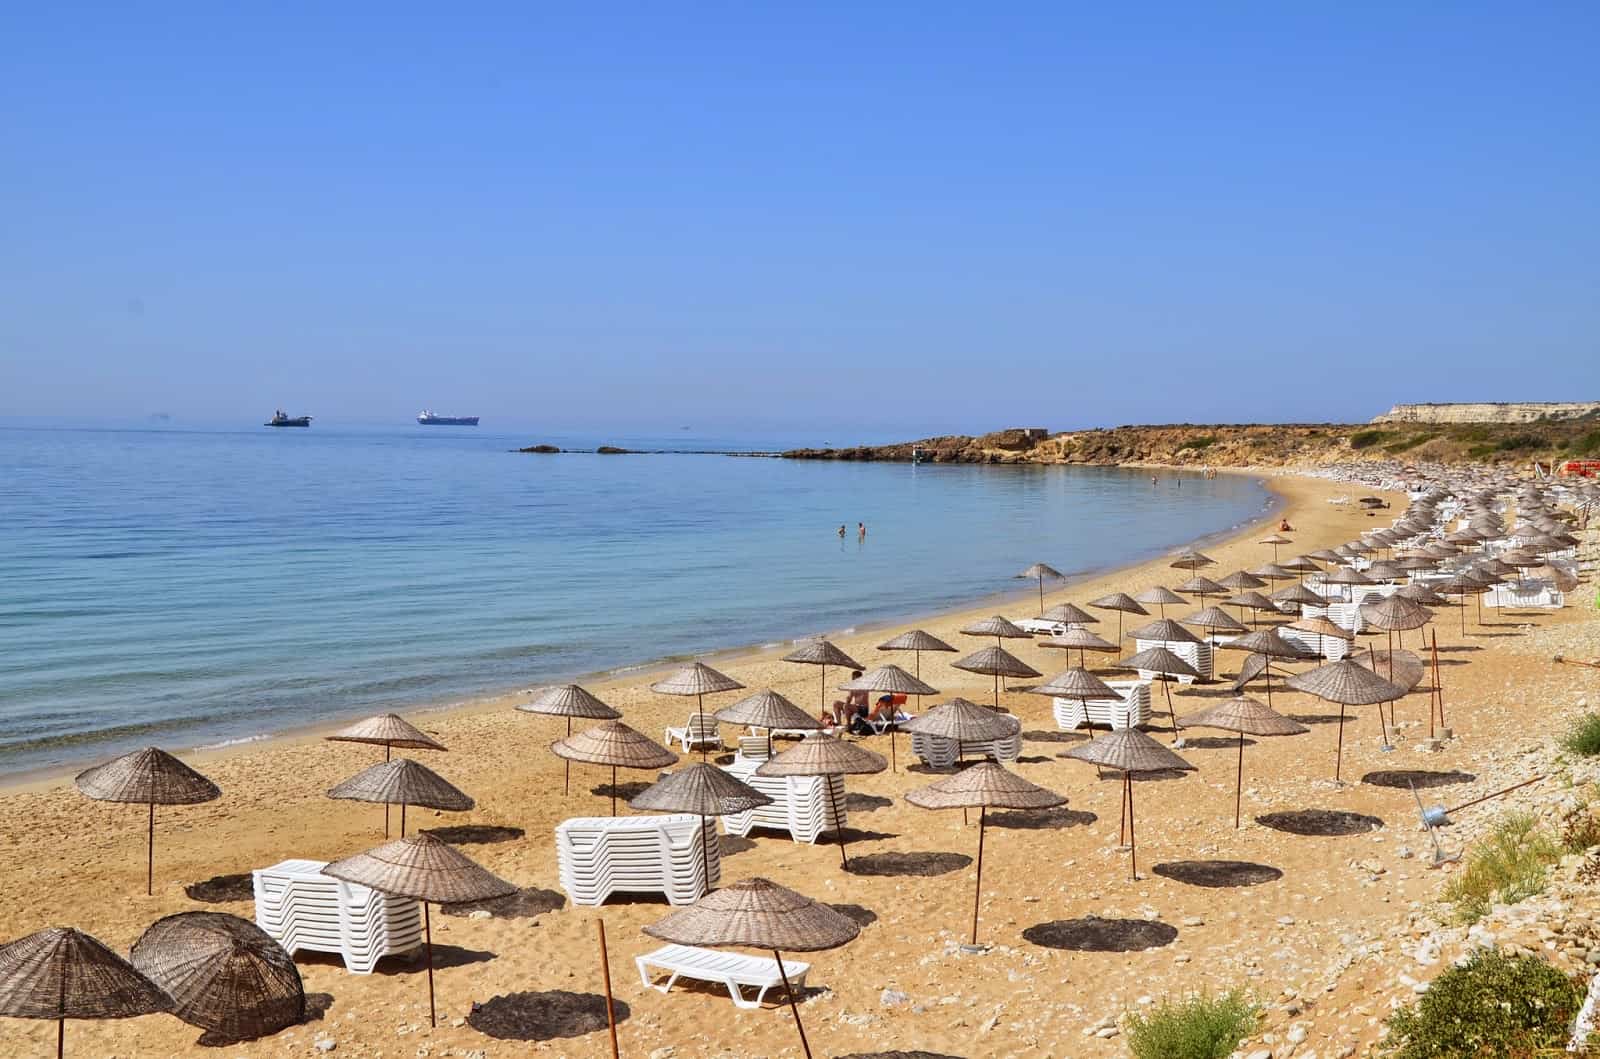 Ayazma Plajı in Bozcaada, Turkey